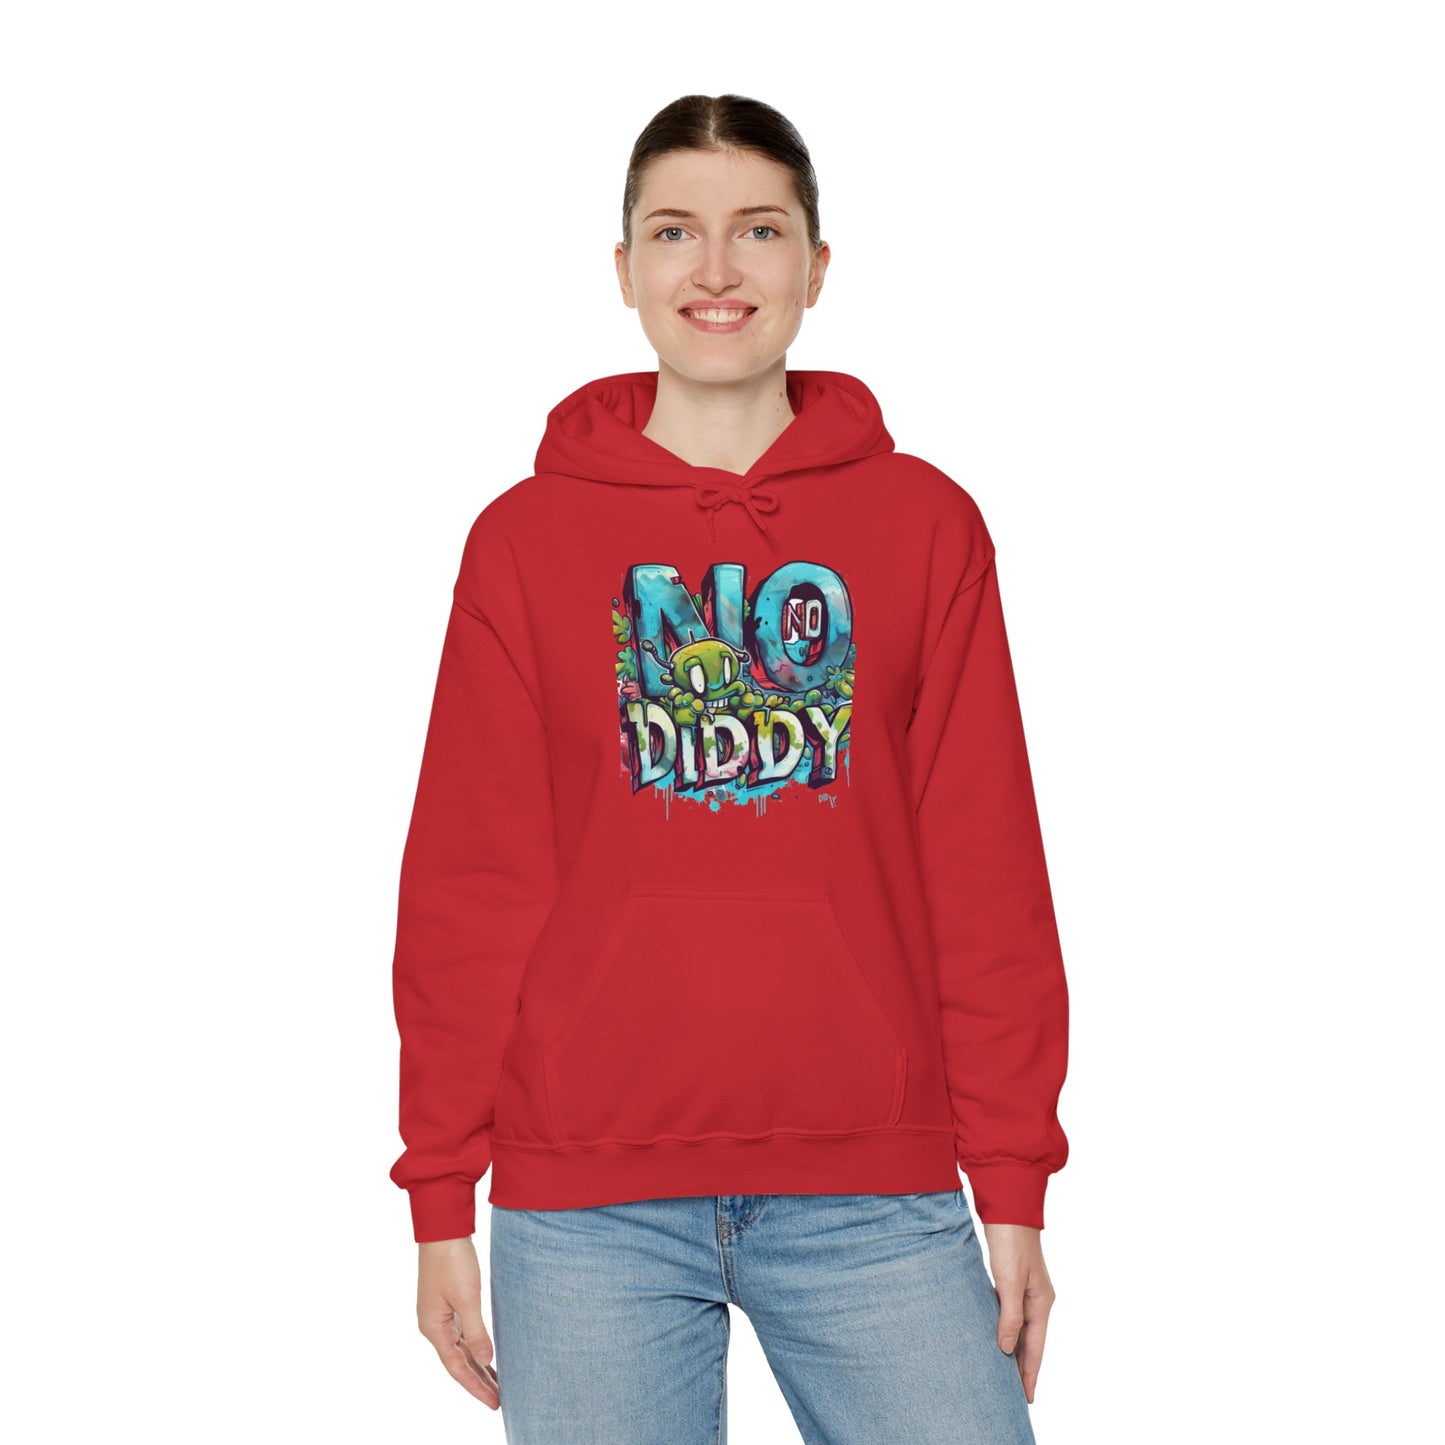 #nodiddy p diddy  Unisex Heavy Blend™ Hooded Sweatshirt diddy